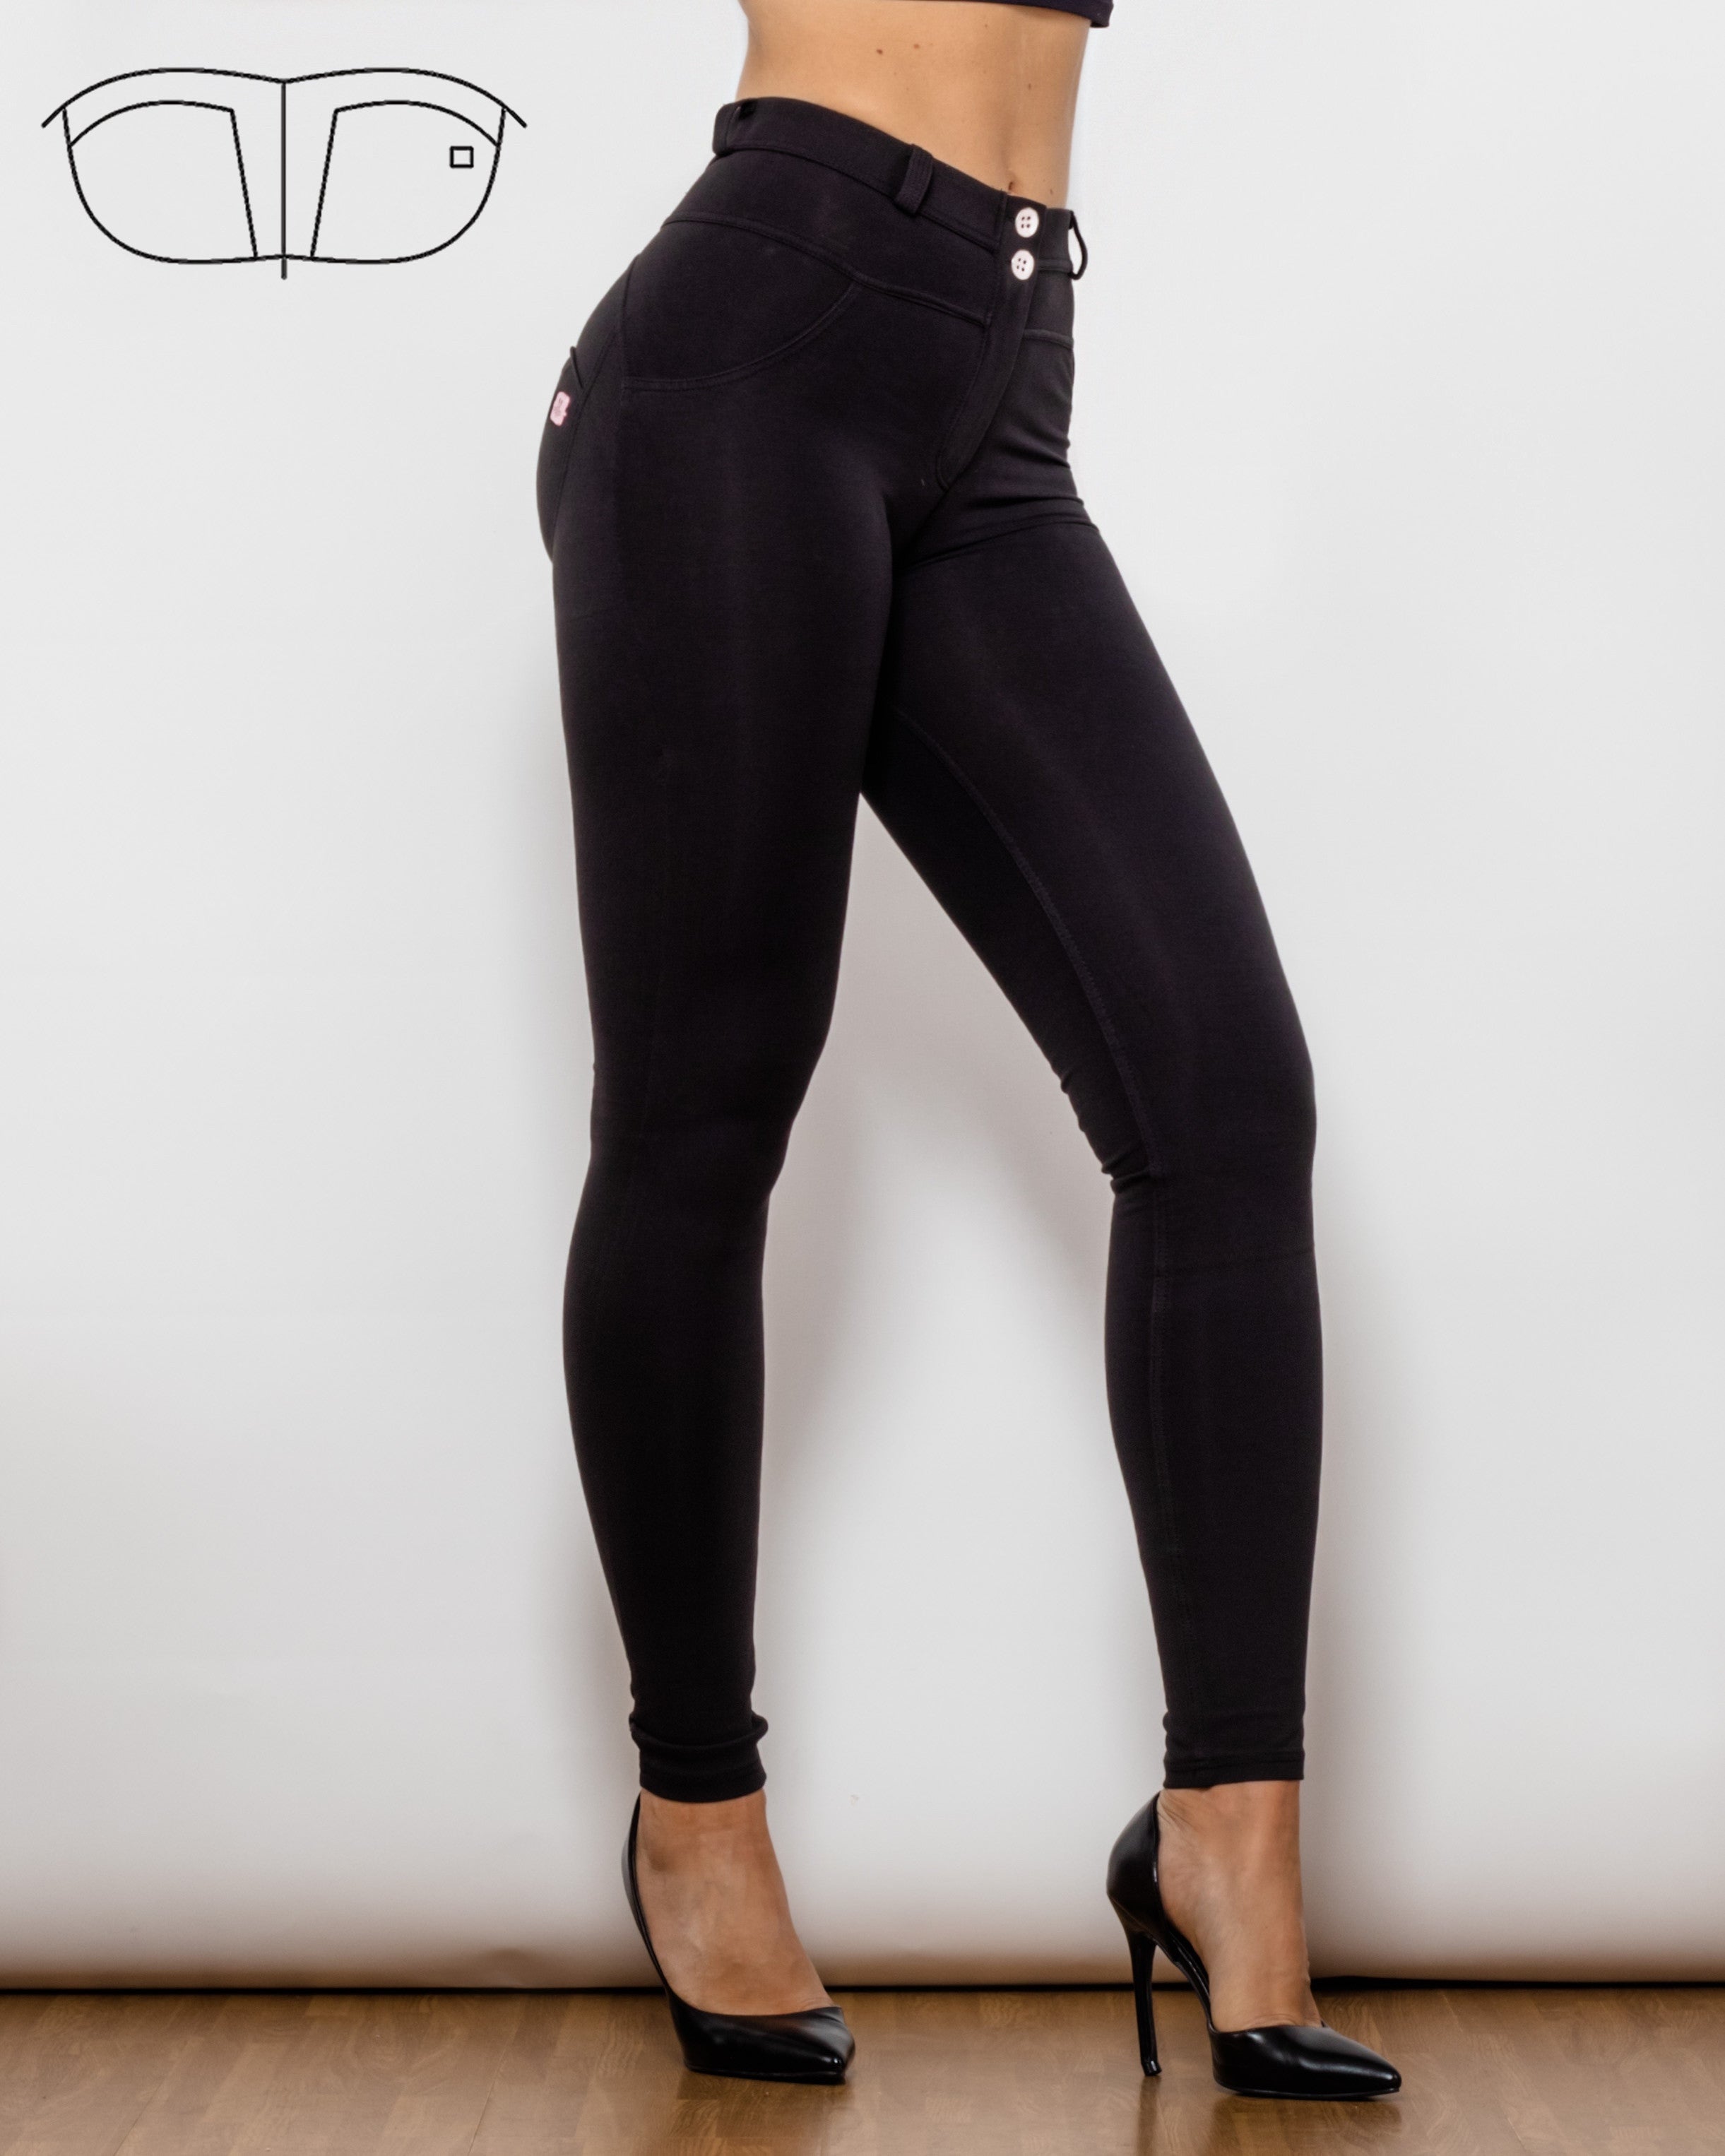 Ltd. Edition Mid-waist Black Shapewear